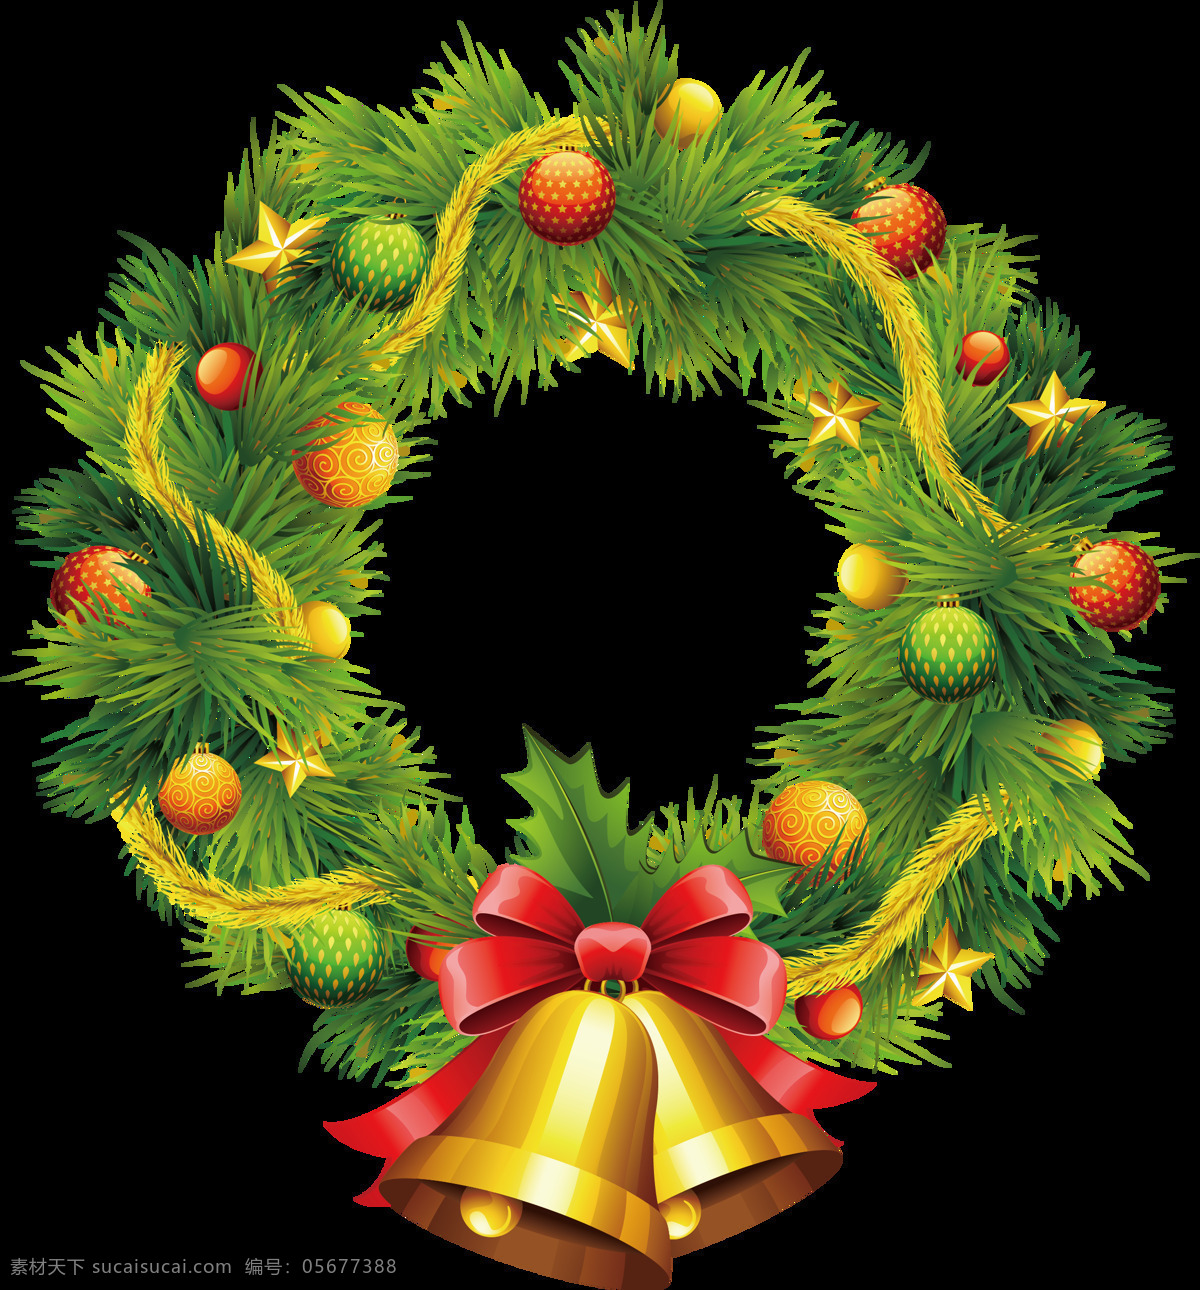 手绘 圣诞 浪漫 圣诞树 花环 透明 绿色 铃铛 圣诞球 蝴蝶结 透明素材 免扣素材 装饰图片